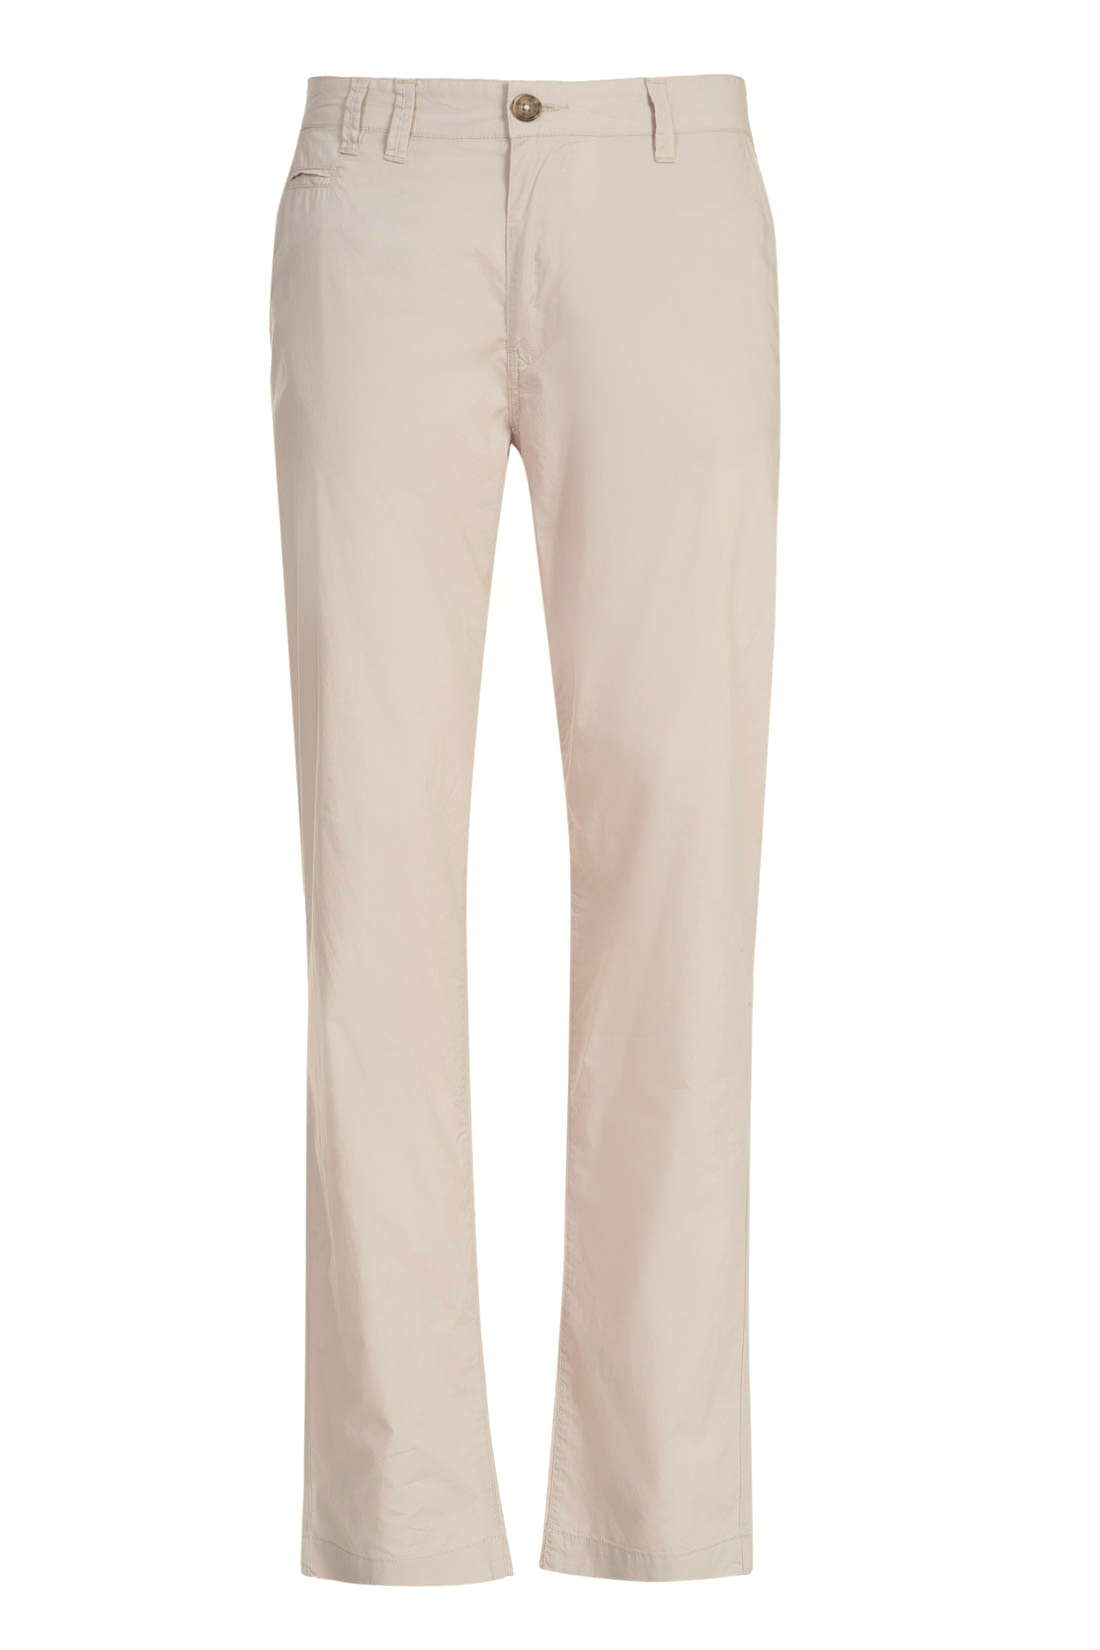 Повседневные брюки из хлопка (арт. baon B797014), размер M, цвет бежевый Повседневные брюки из хлопка (арт. baon B797014) - фото 4